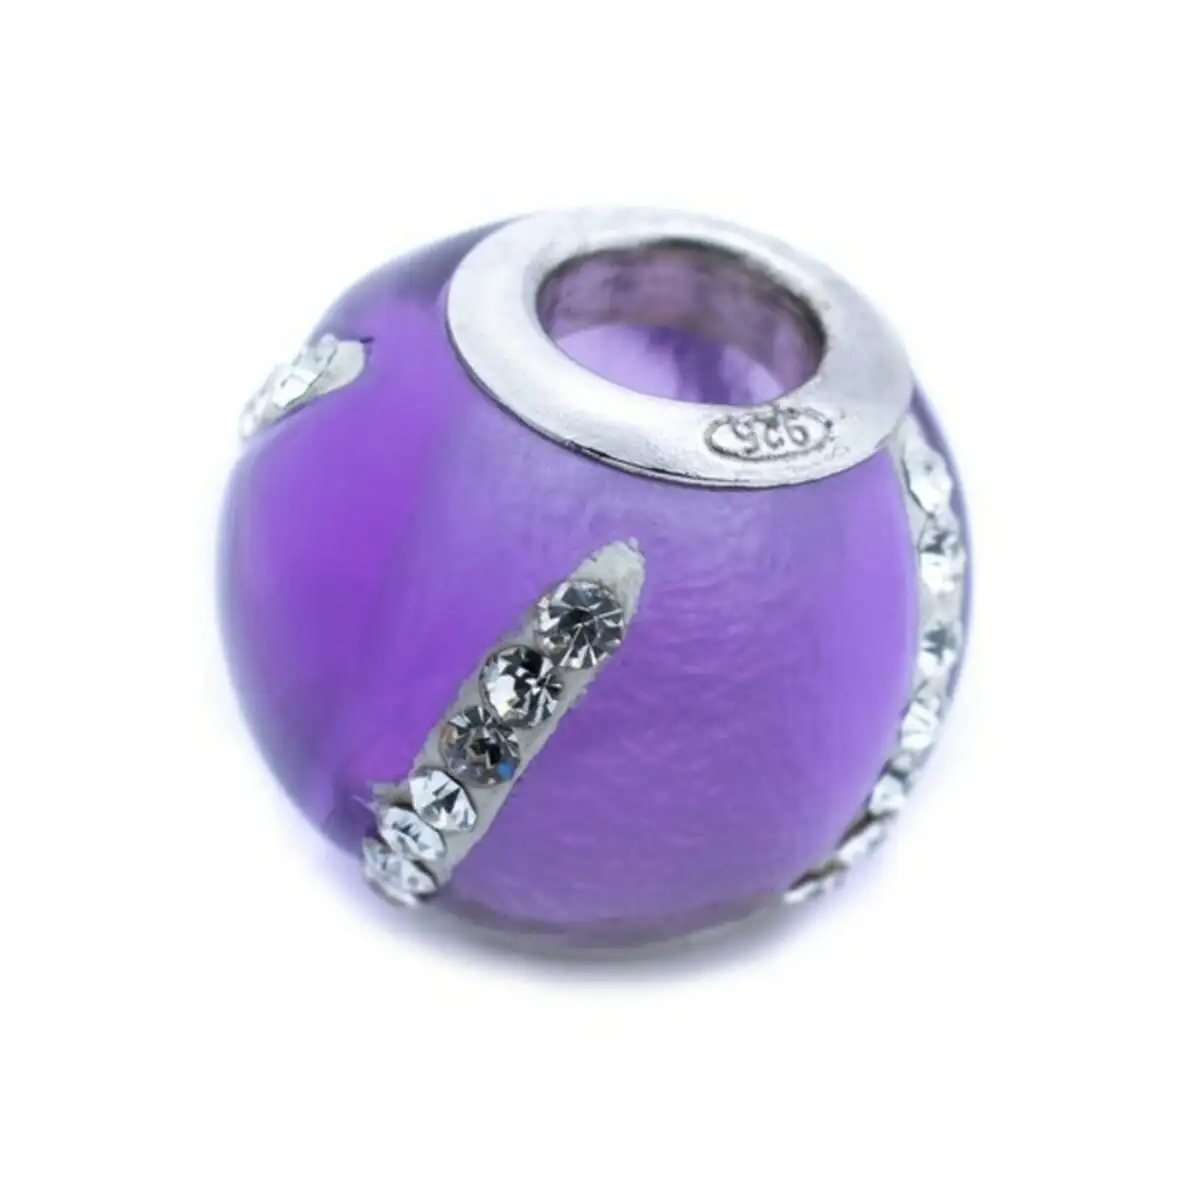 Perle de verre femme viceroy vmm0311 27 violet 1 cm _2862. DIAYTAR SENEGAL - L'Art de Vivre l'Excellence au Quotidien. Explorez notre gamme et choisissez des produits qui ajoutent une note de prestige à votre vie.